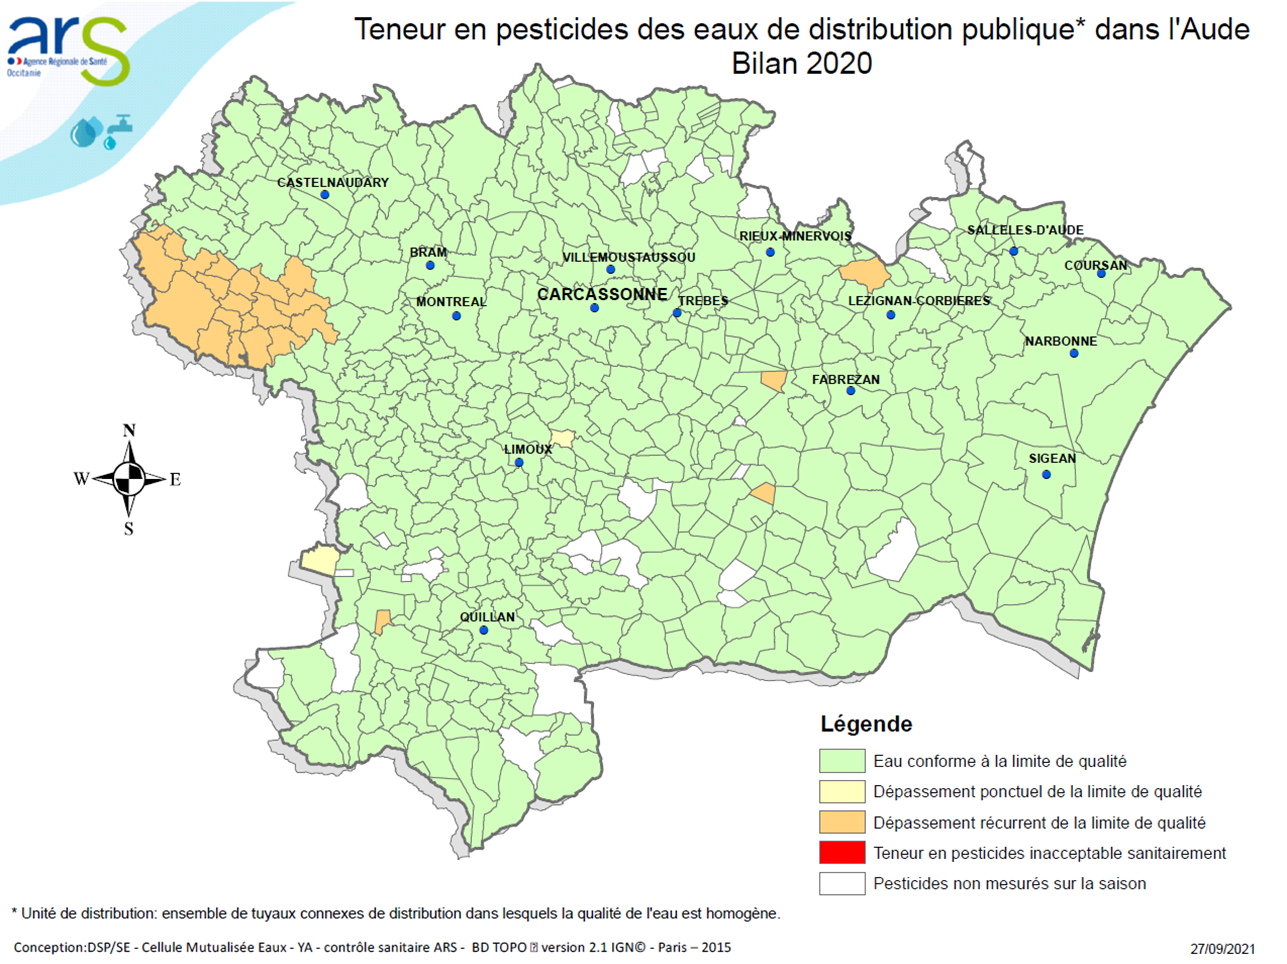 Pesticides Aude (Bilan eau 2020)